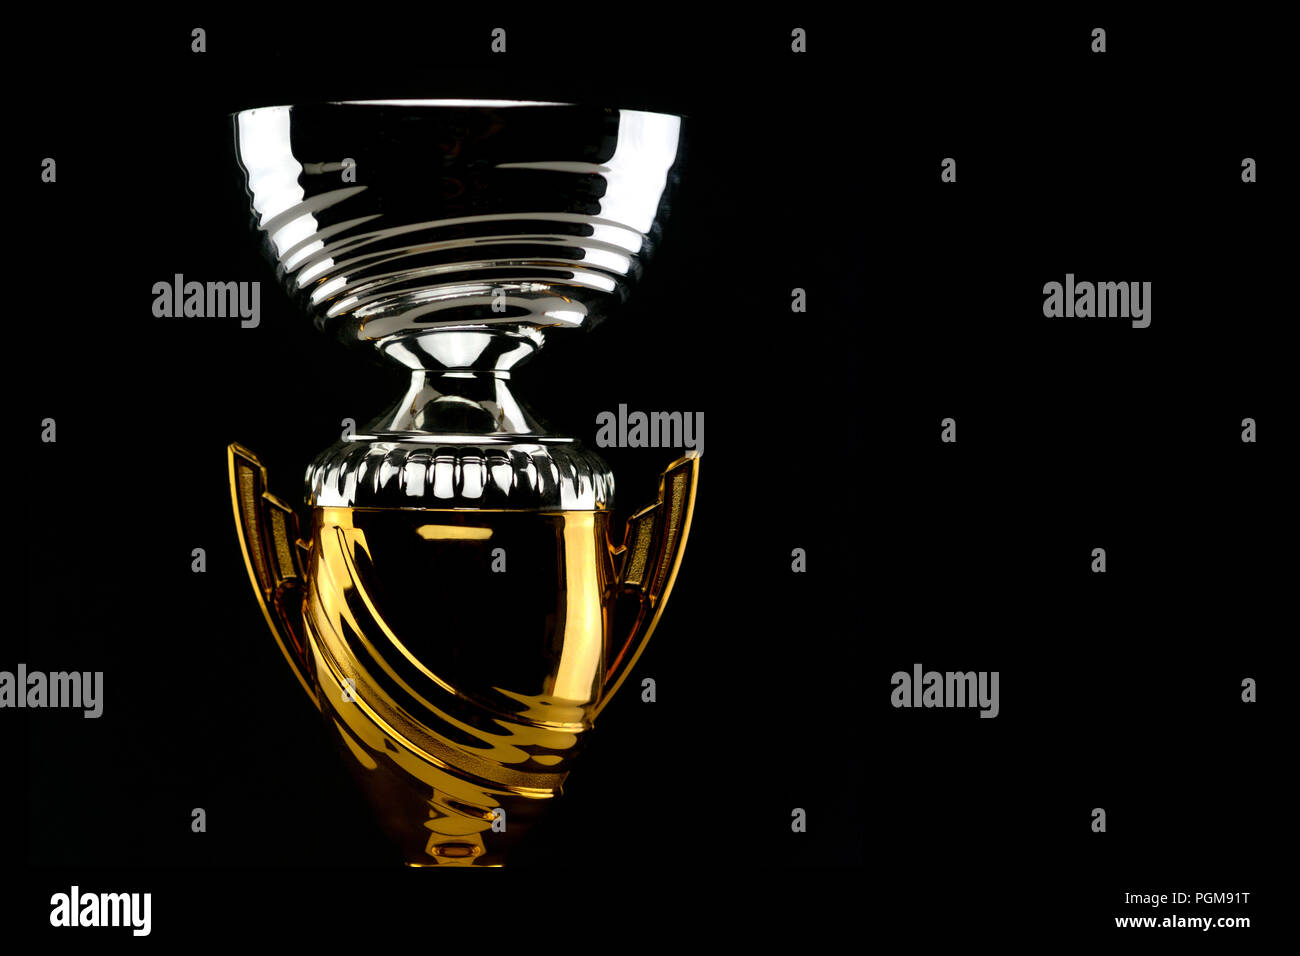 Trophée d'or et brillant argenté sur fond noir Banque D'Images